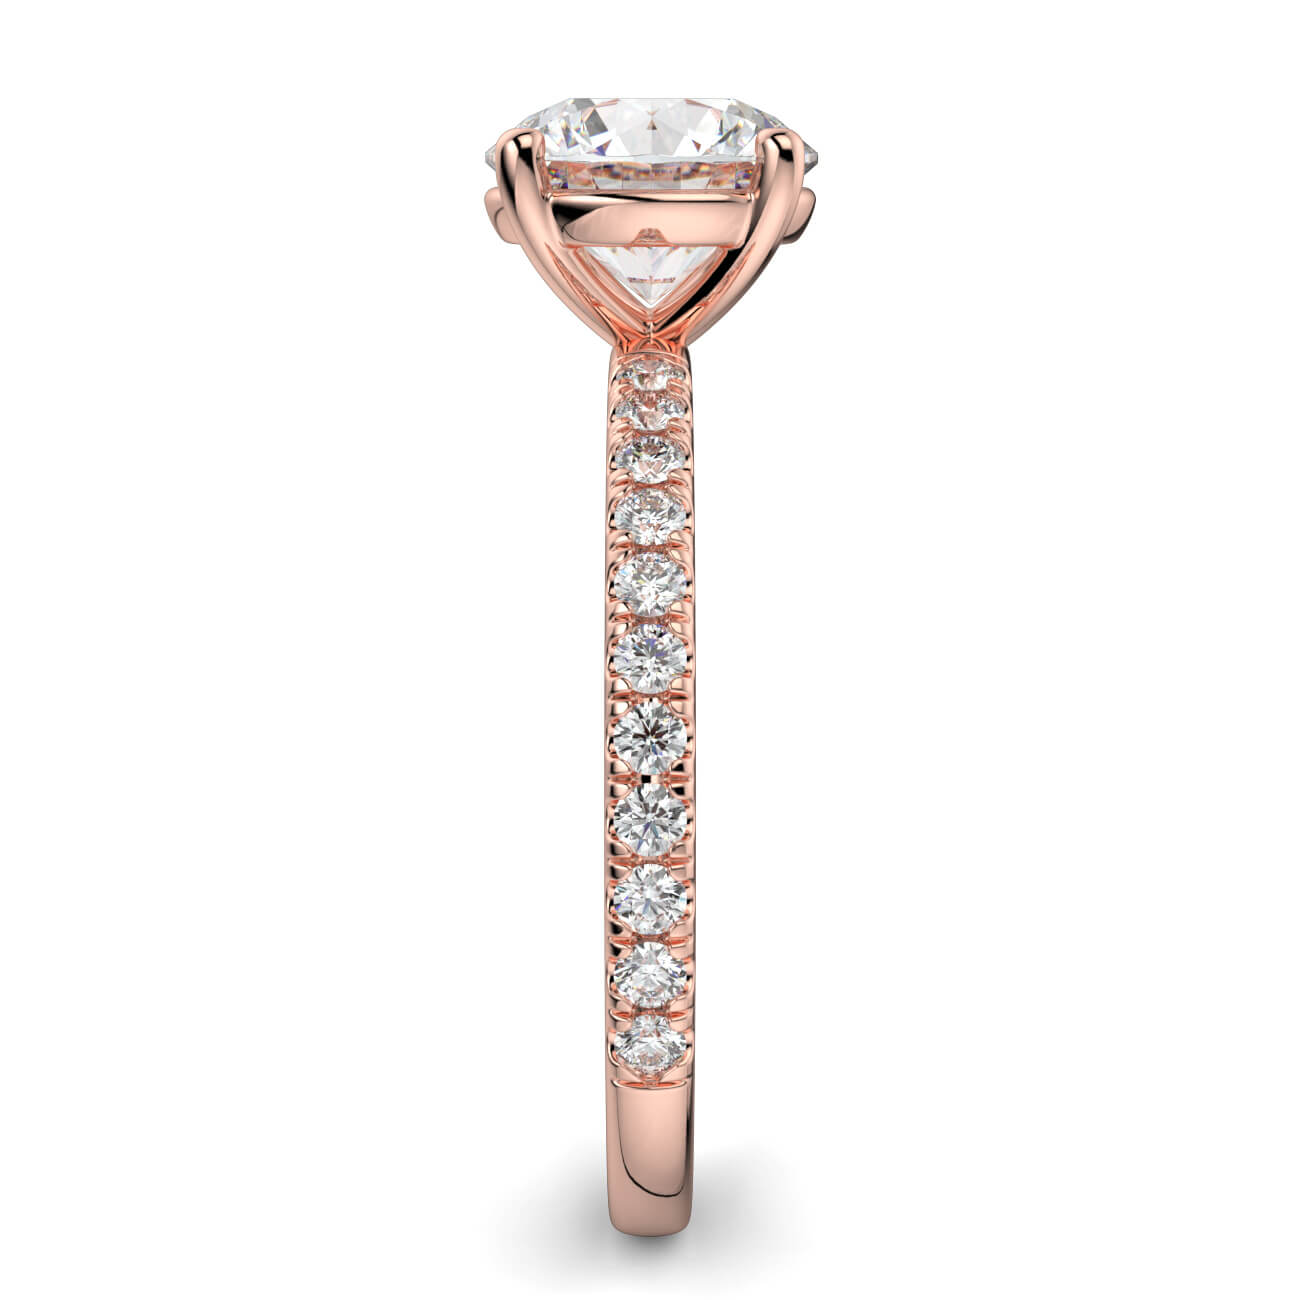 Classic Pavé Diamond Engagement Ring in 18k Rose Gold – Australian Diamond Network